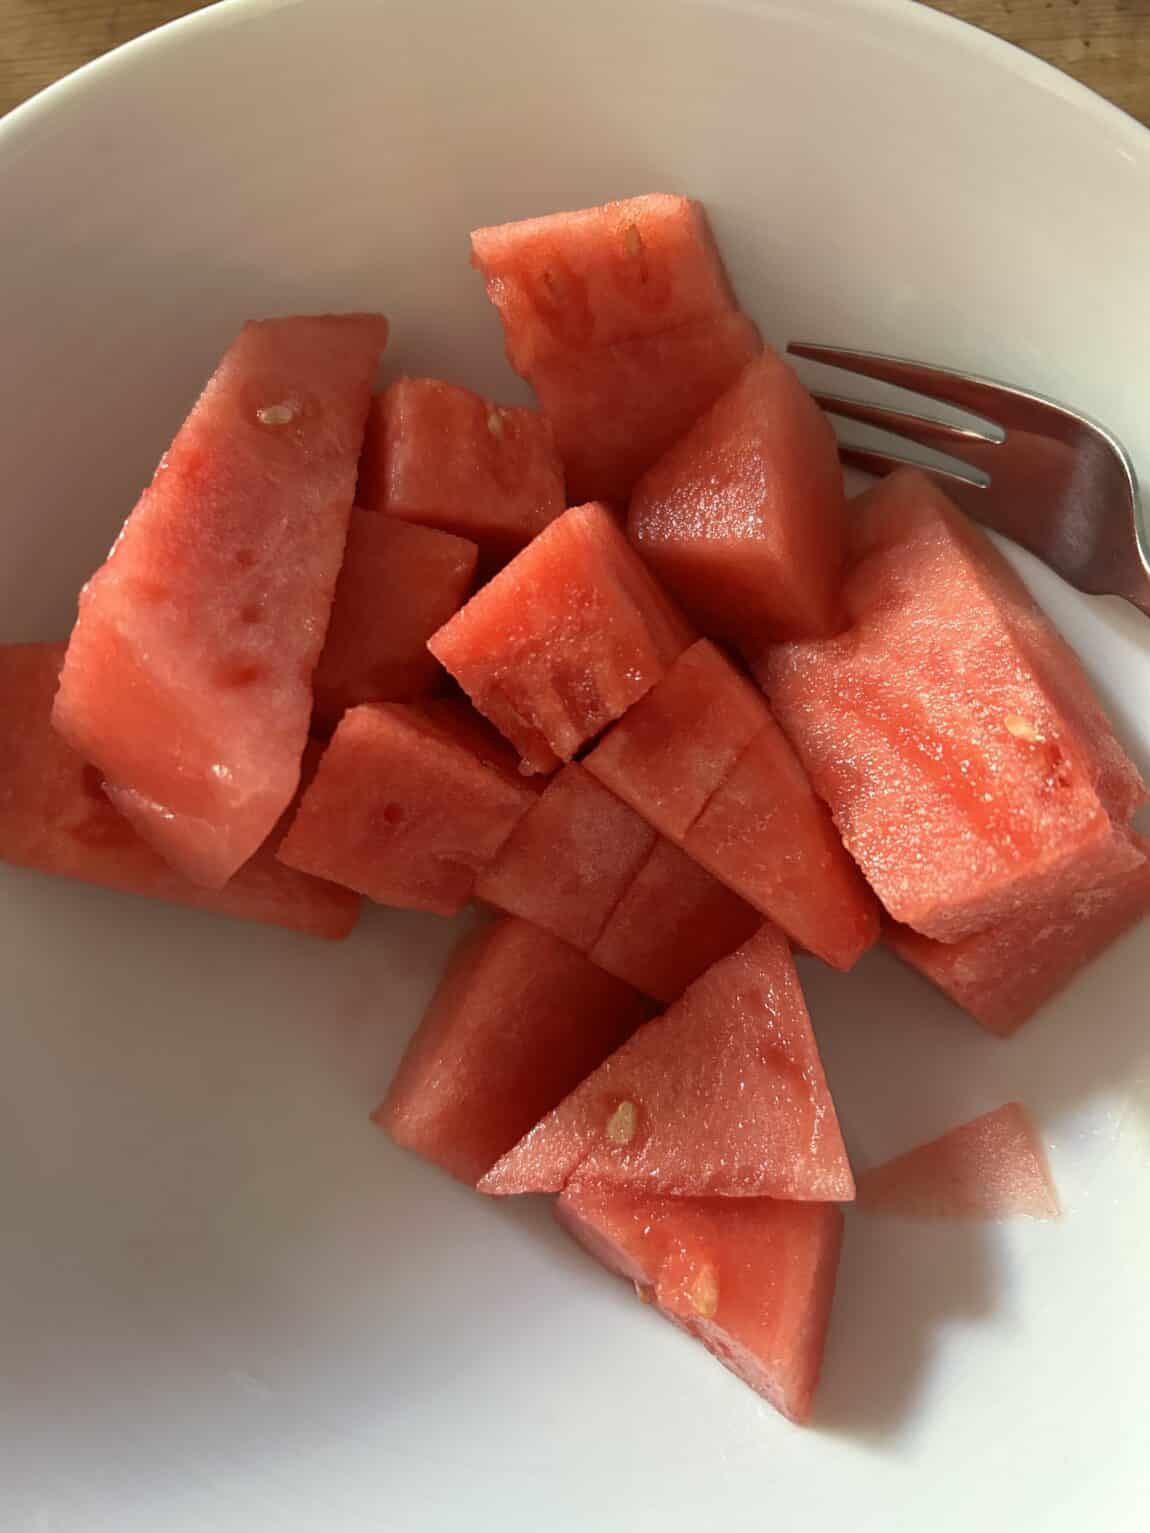 #8 Erstmal Melone zur Erfrischung..